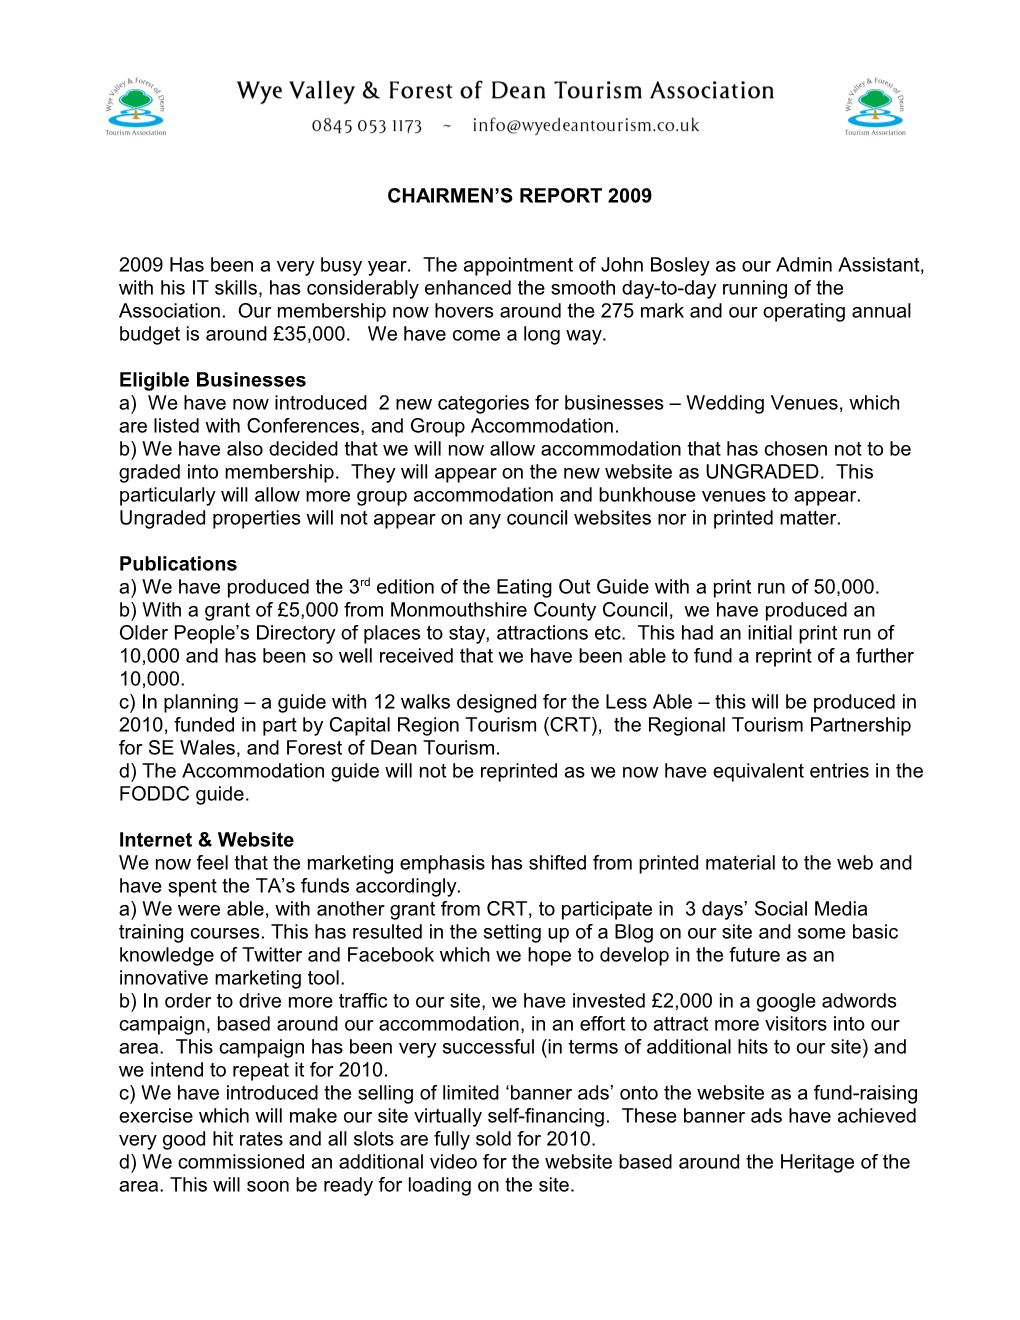 Chairmen S Report 2009